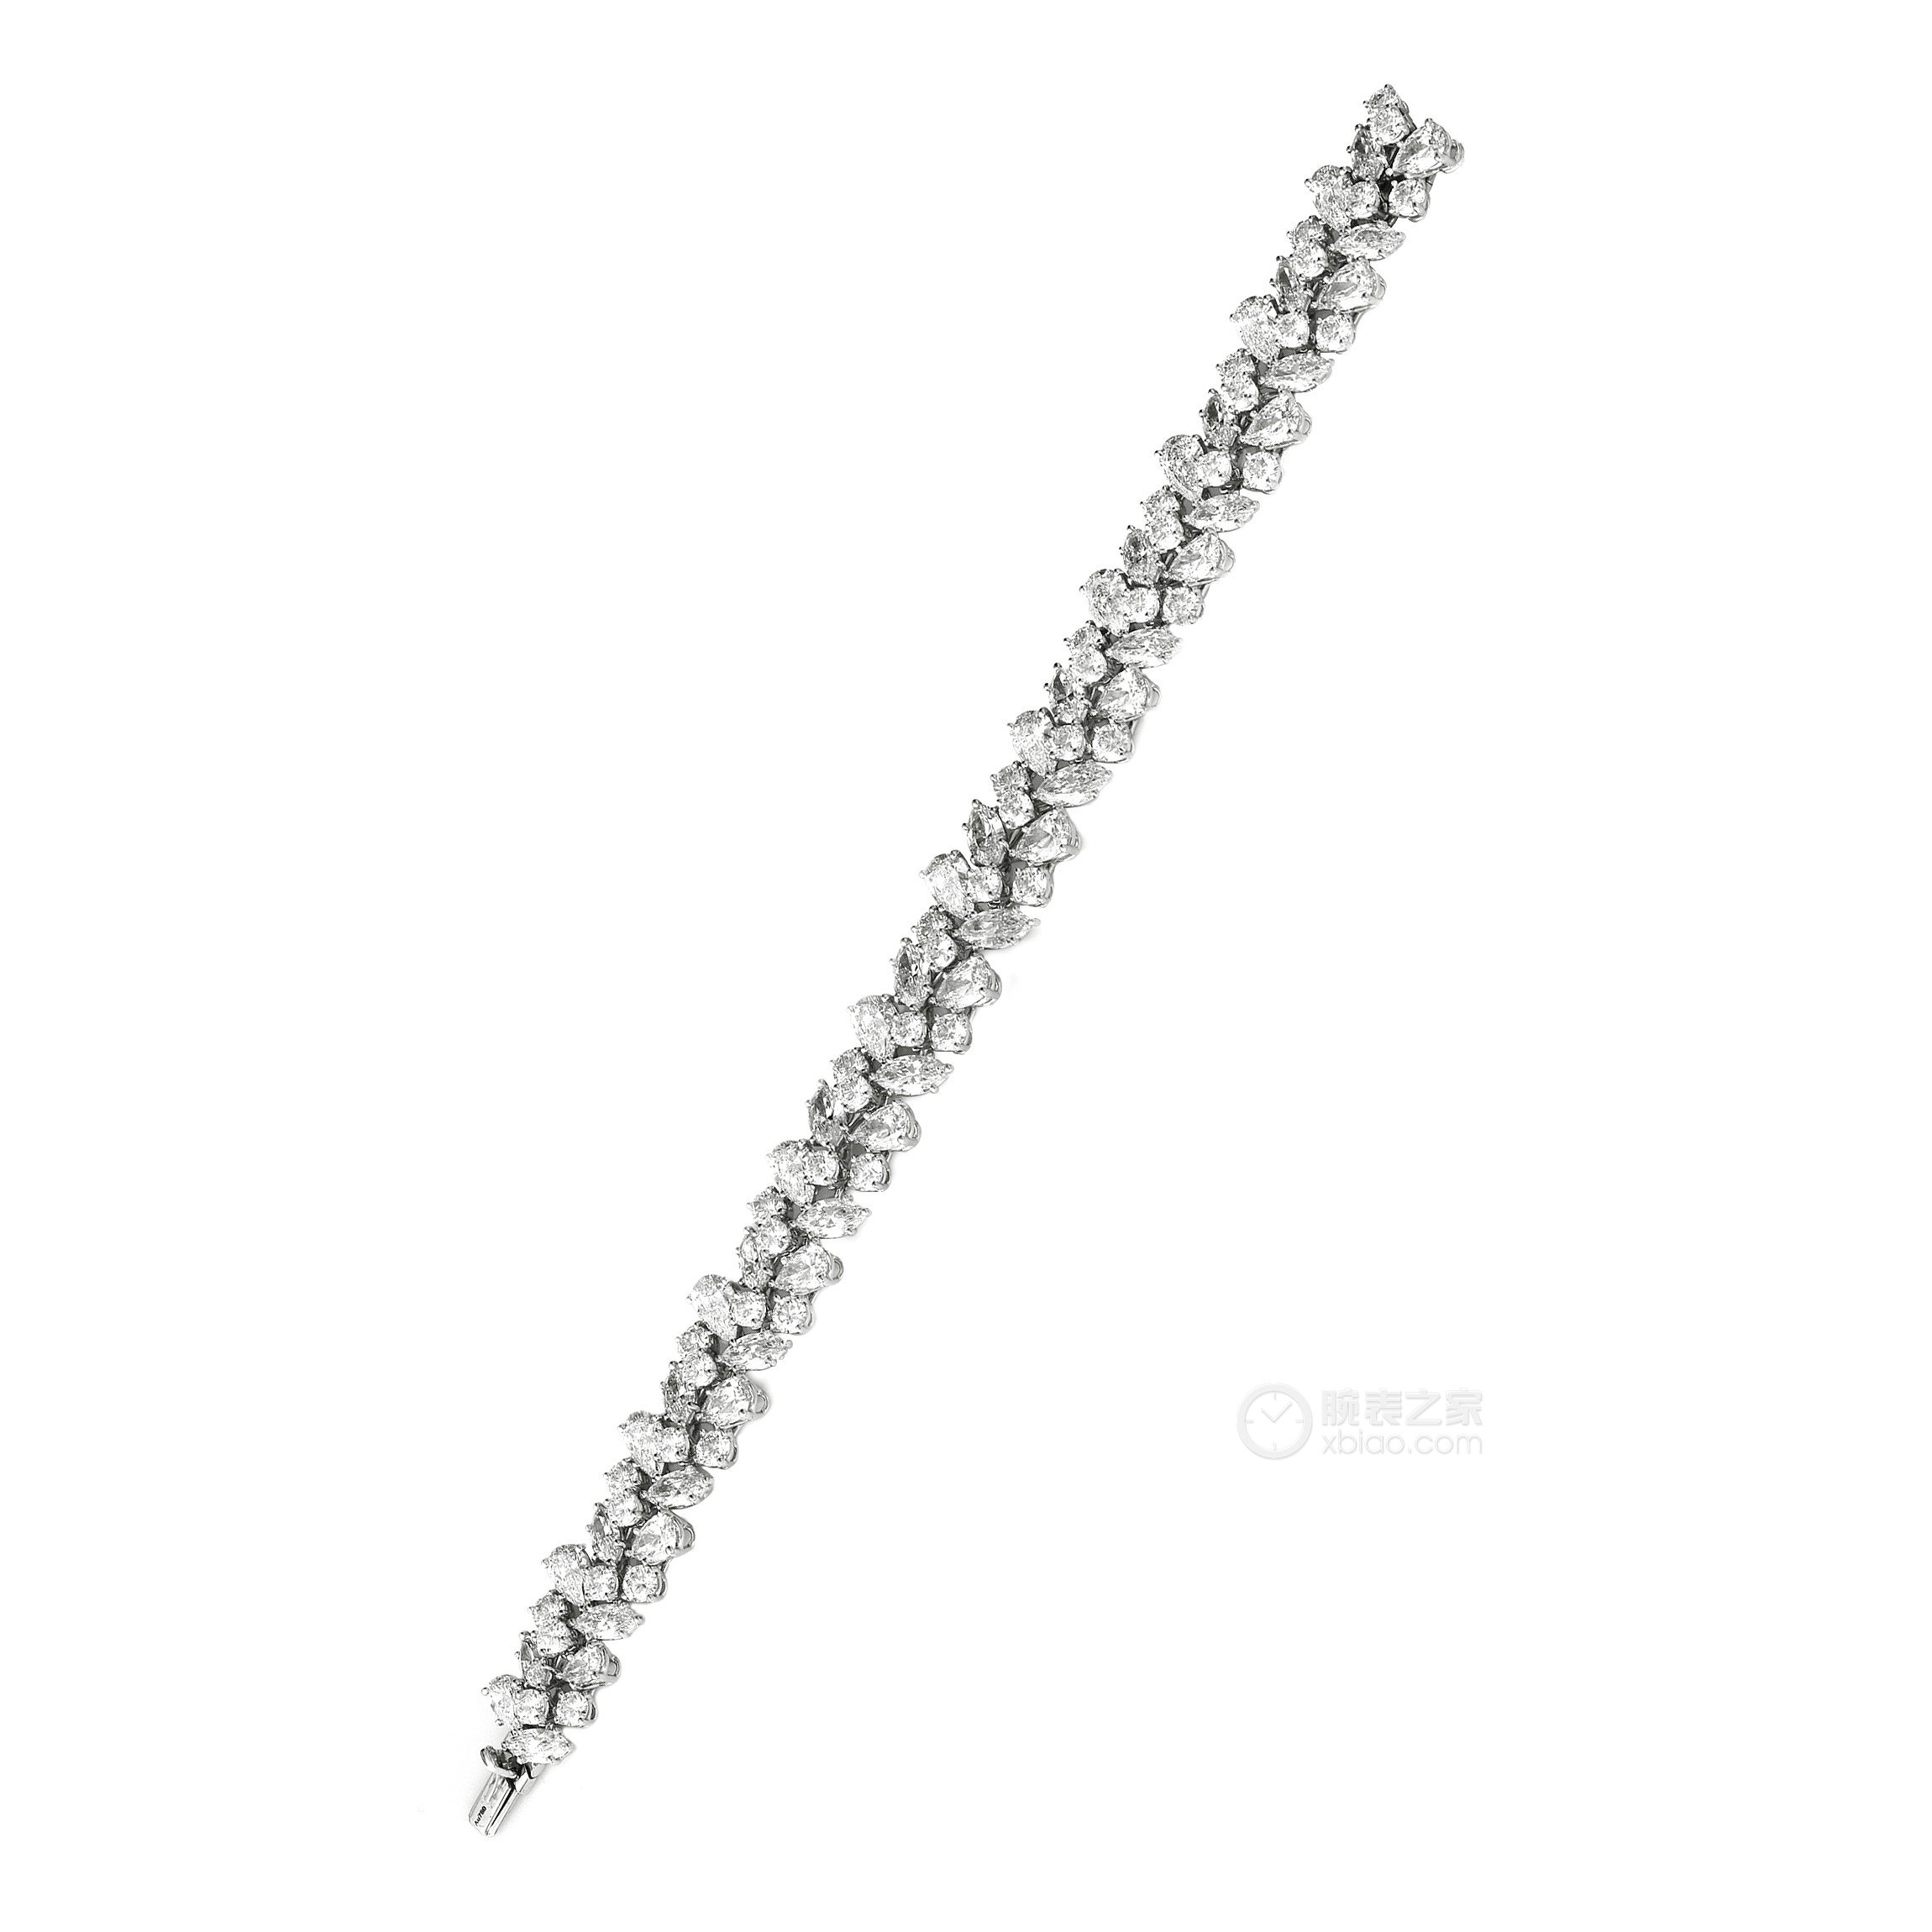 海瑞温斯顿WINSTON CLUSTER珠宝系列 锦簇钻石手链手镯